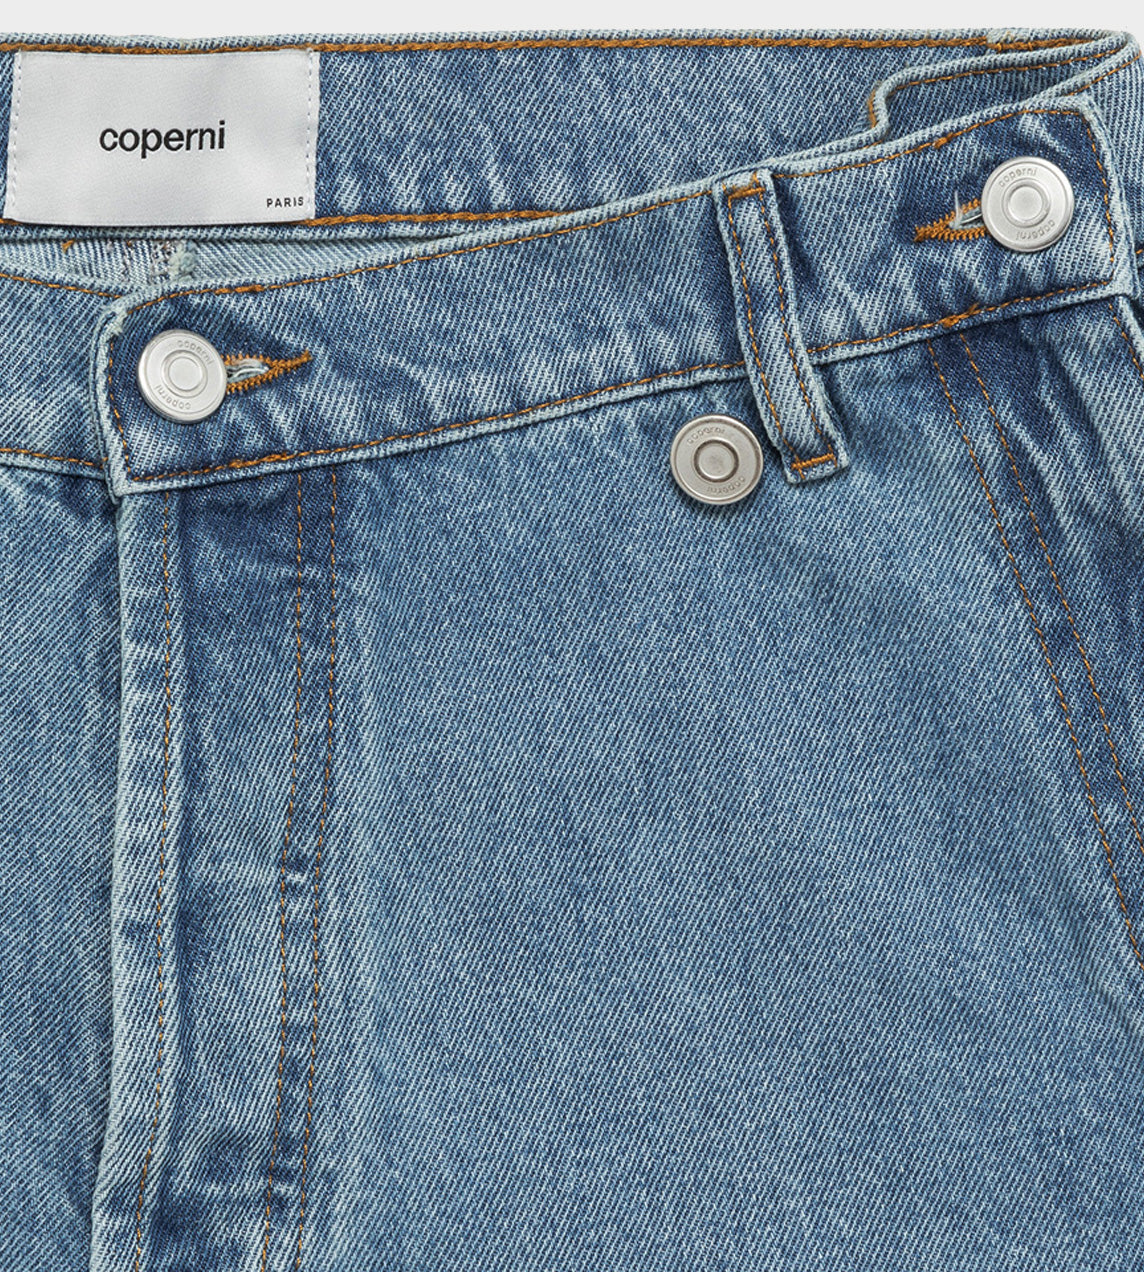 Coperni - Open Hip Shorts Washed Blue